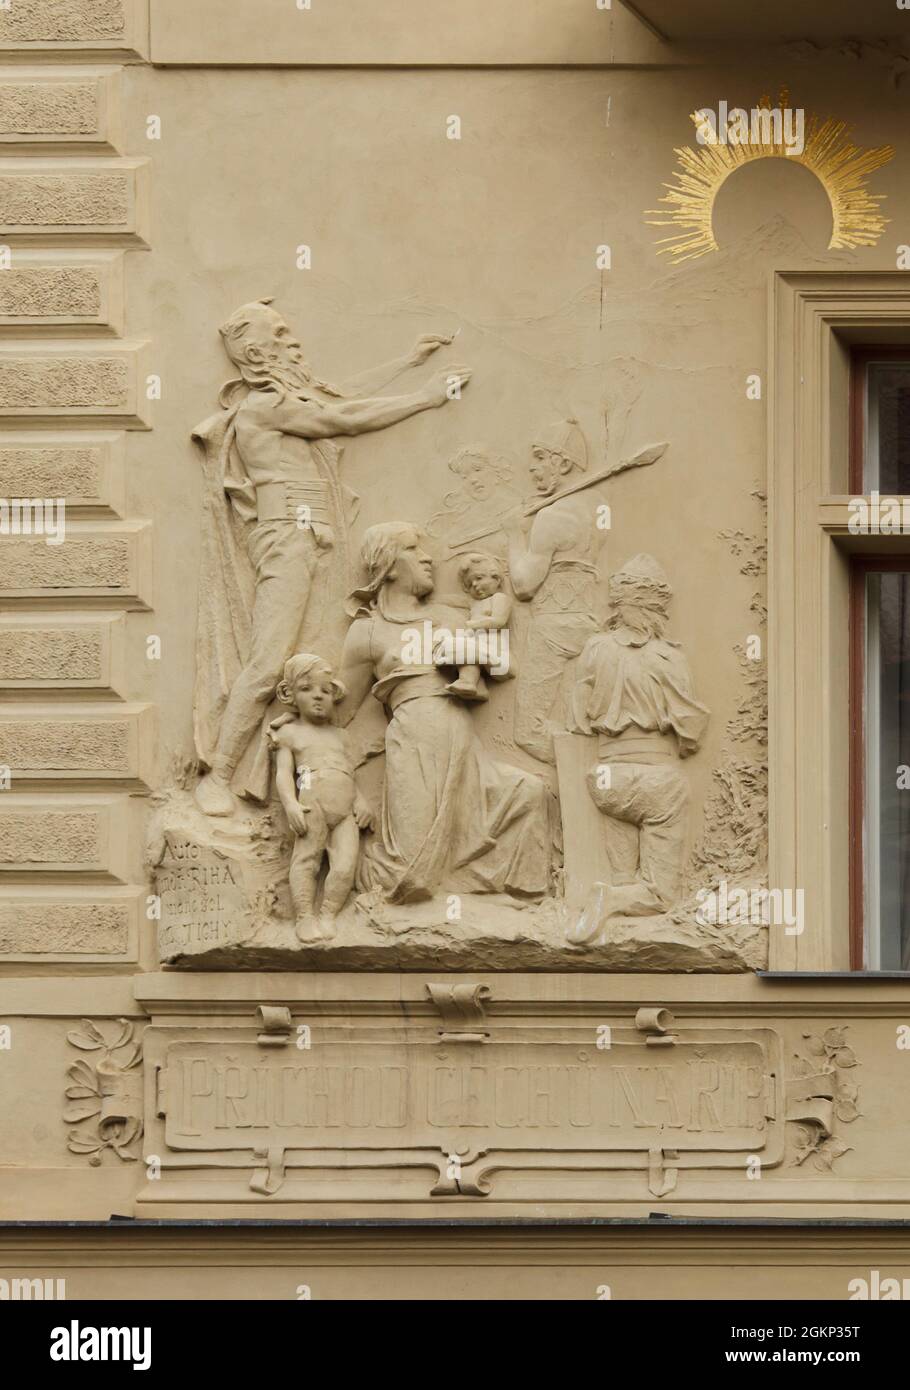 Ankunft der ersten Slawen, angeführt von Ahnvater Čech, auf den Berg Říp, dargestellt im Stuckrelief, das der tschechische Bildhauer Jindřich Říha zwischen 1898 und 1904 im Haus Goliath (Dům U Goliáše) in der Železná-Straße in Staré Město (Altstadt) in Prag, Tschechien, entworfen hat. Stockfoto